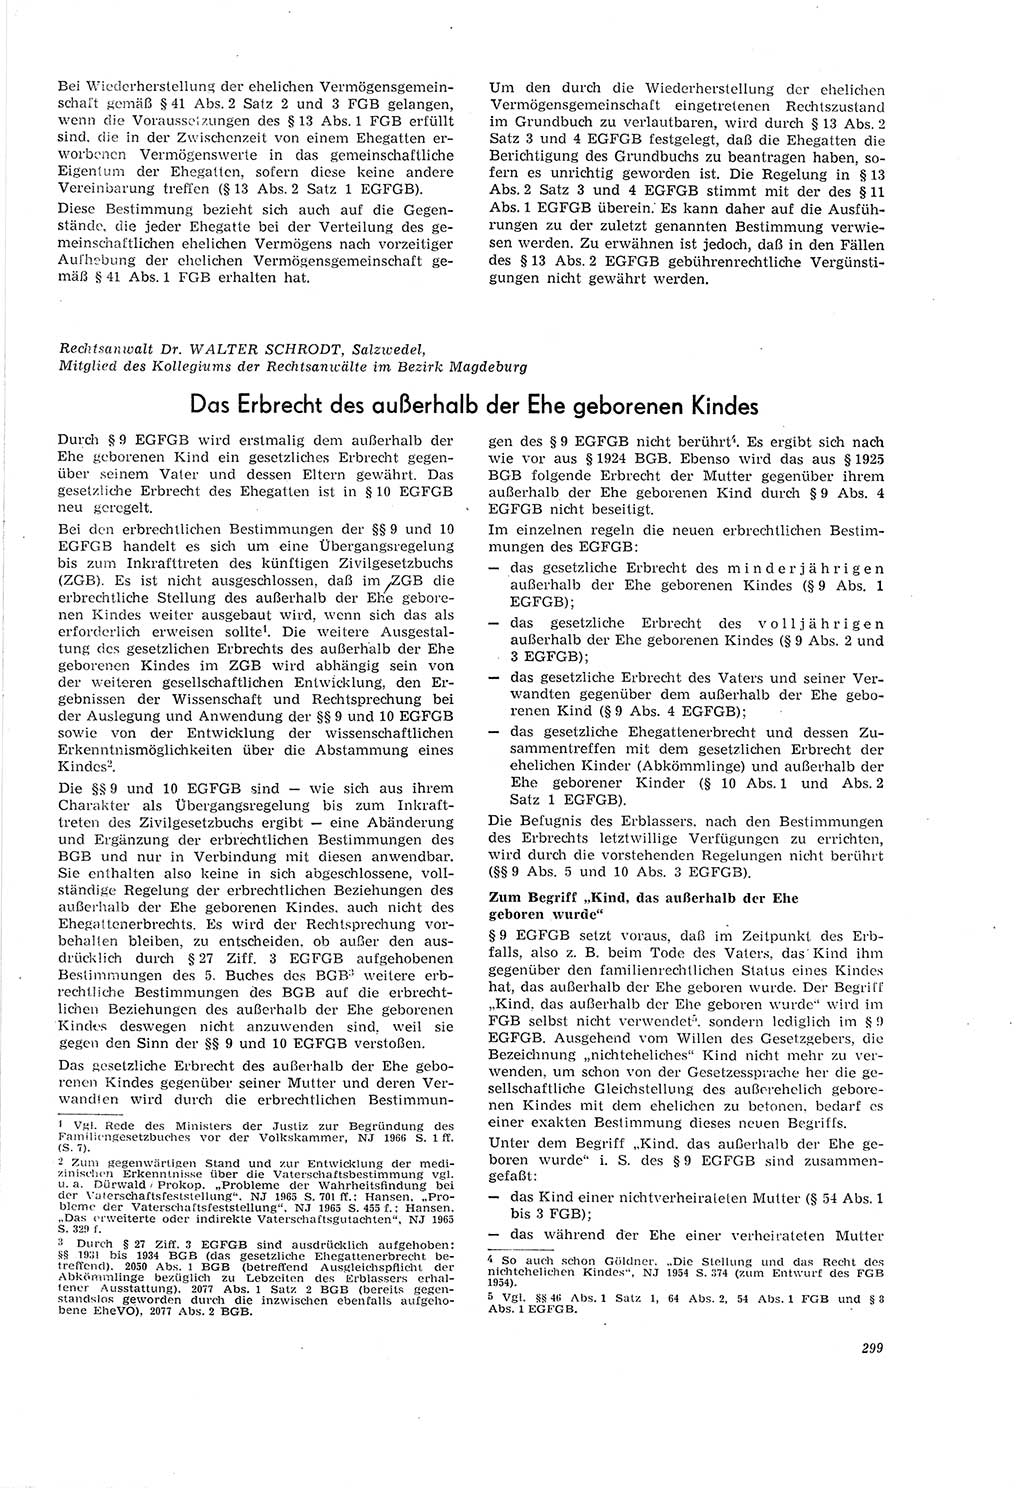 Neue Justiz (NJ), Zeitschrift für Recht und Rechtswissenschaft [Deutsche Demokratische Republik (DDR)], 20. Jahrgang 1966, Seite 299 (NJ DDR 1966, S. 299)